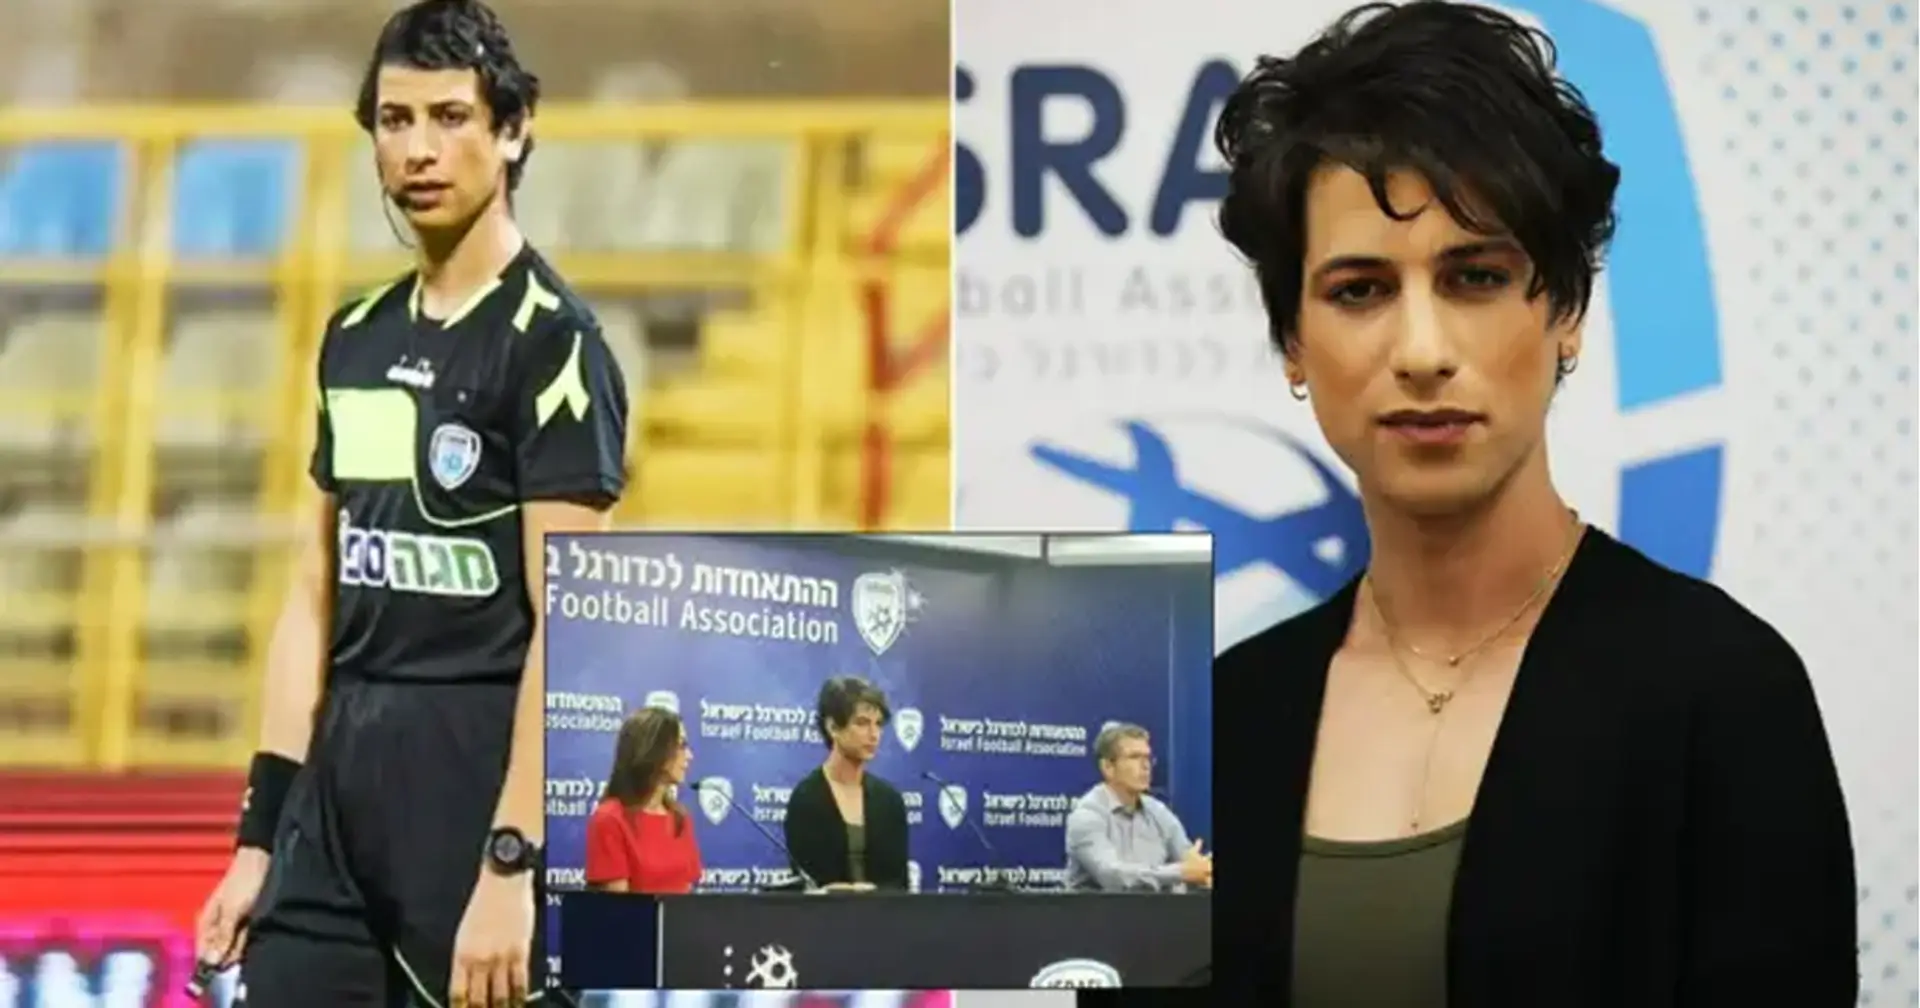 La Federación de Israel anuncia al primer árbitro transgénero en la historia del fútbol